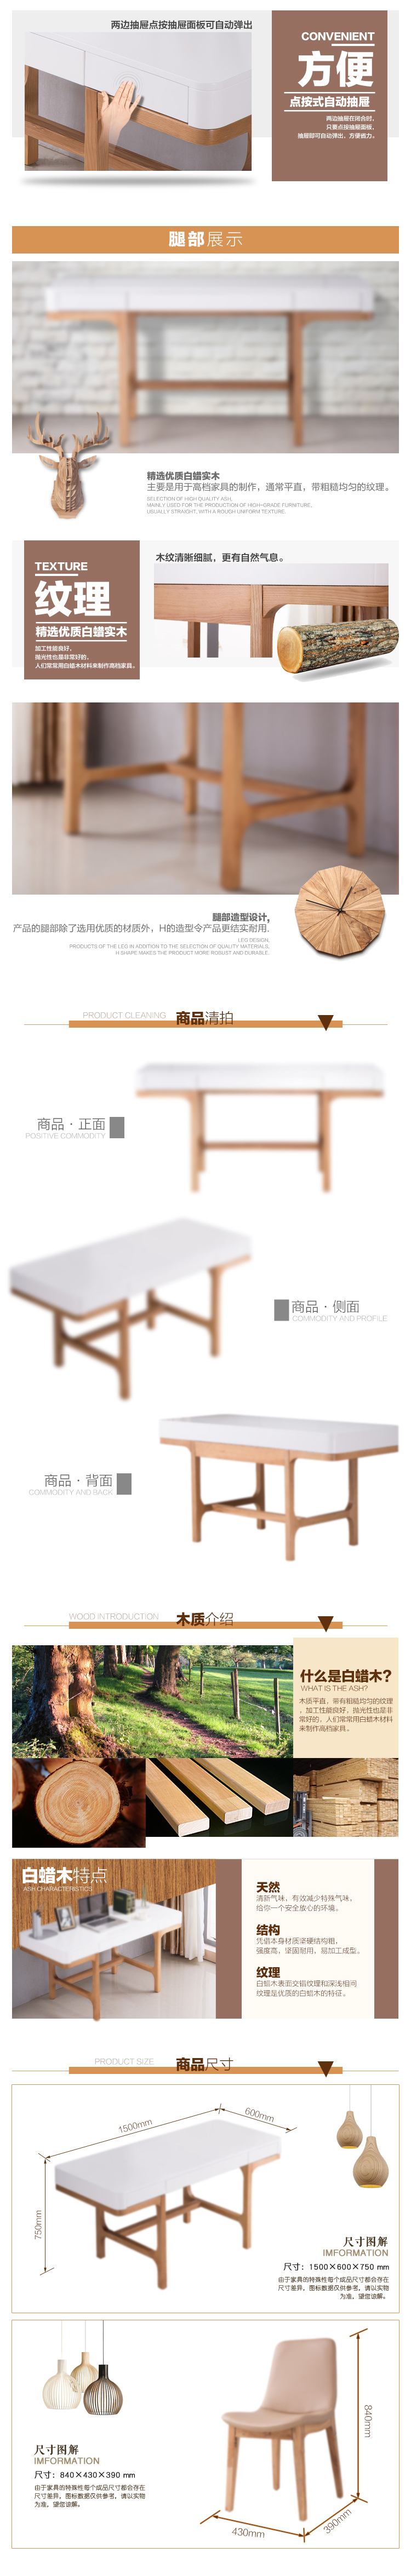 书桌简欧风格详情页设计案例2